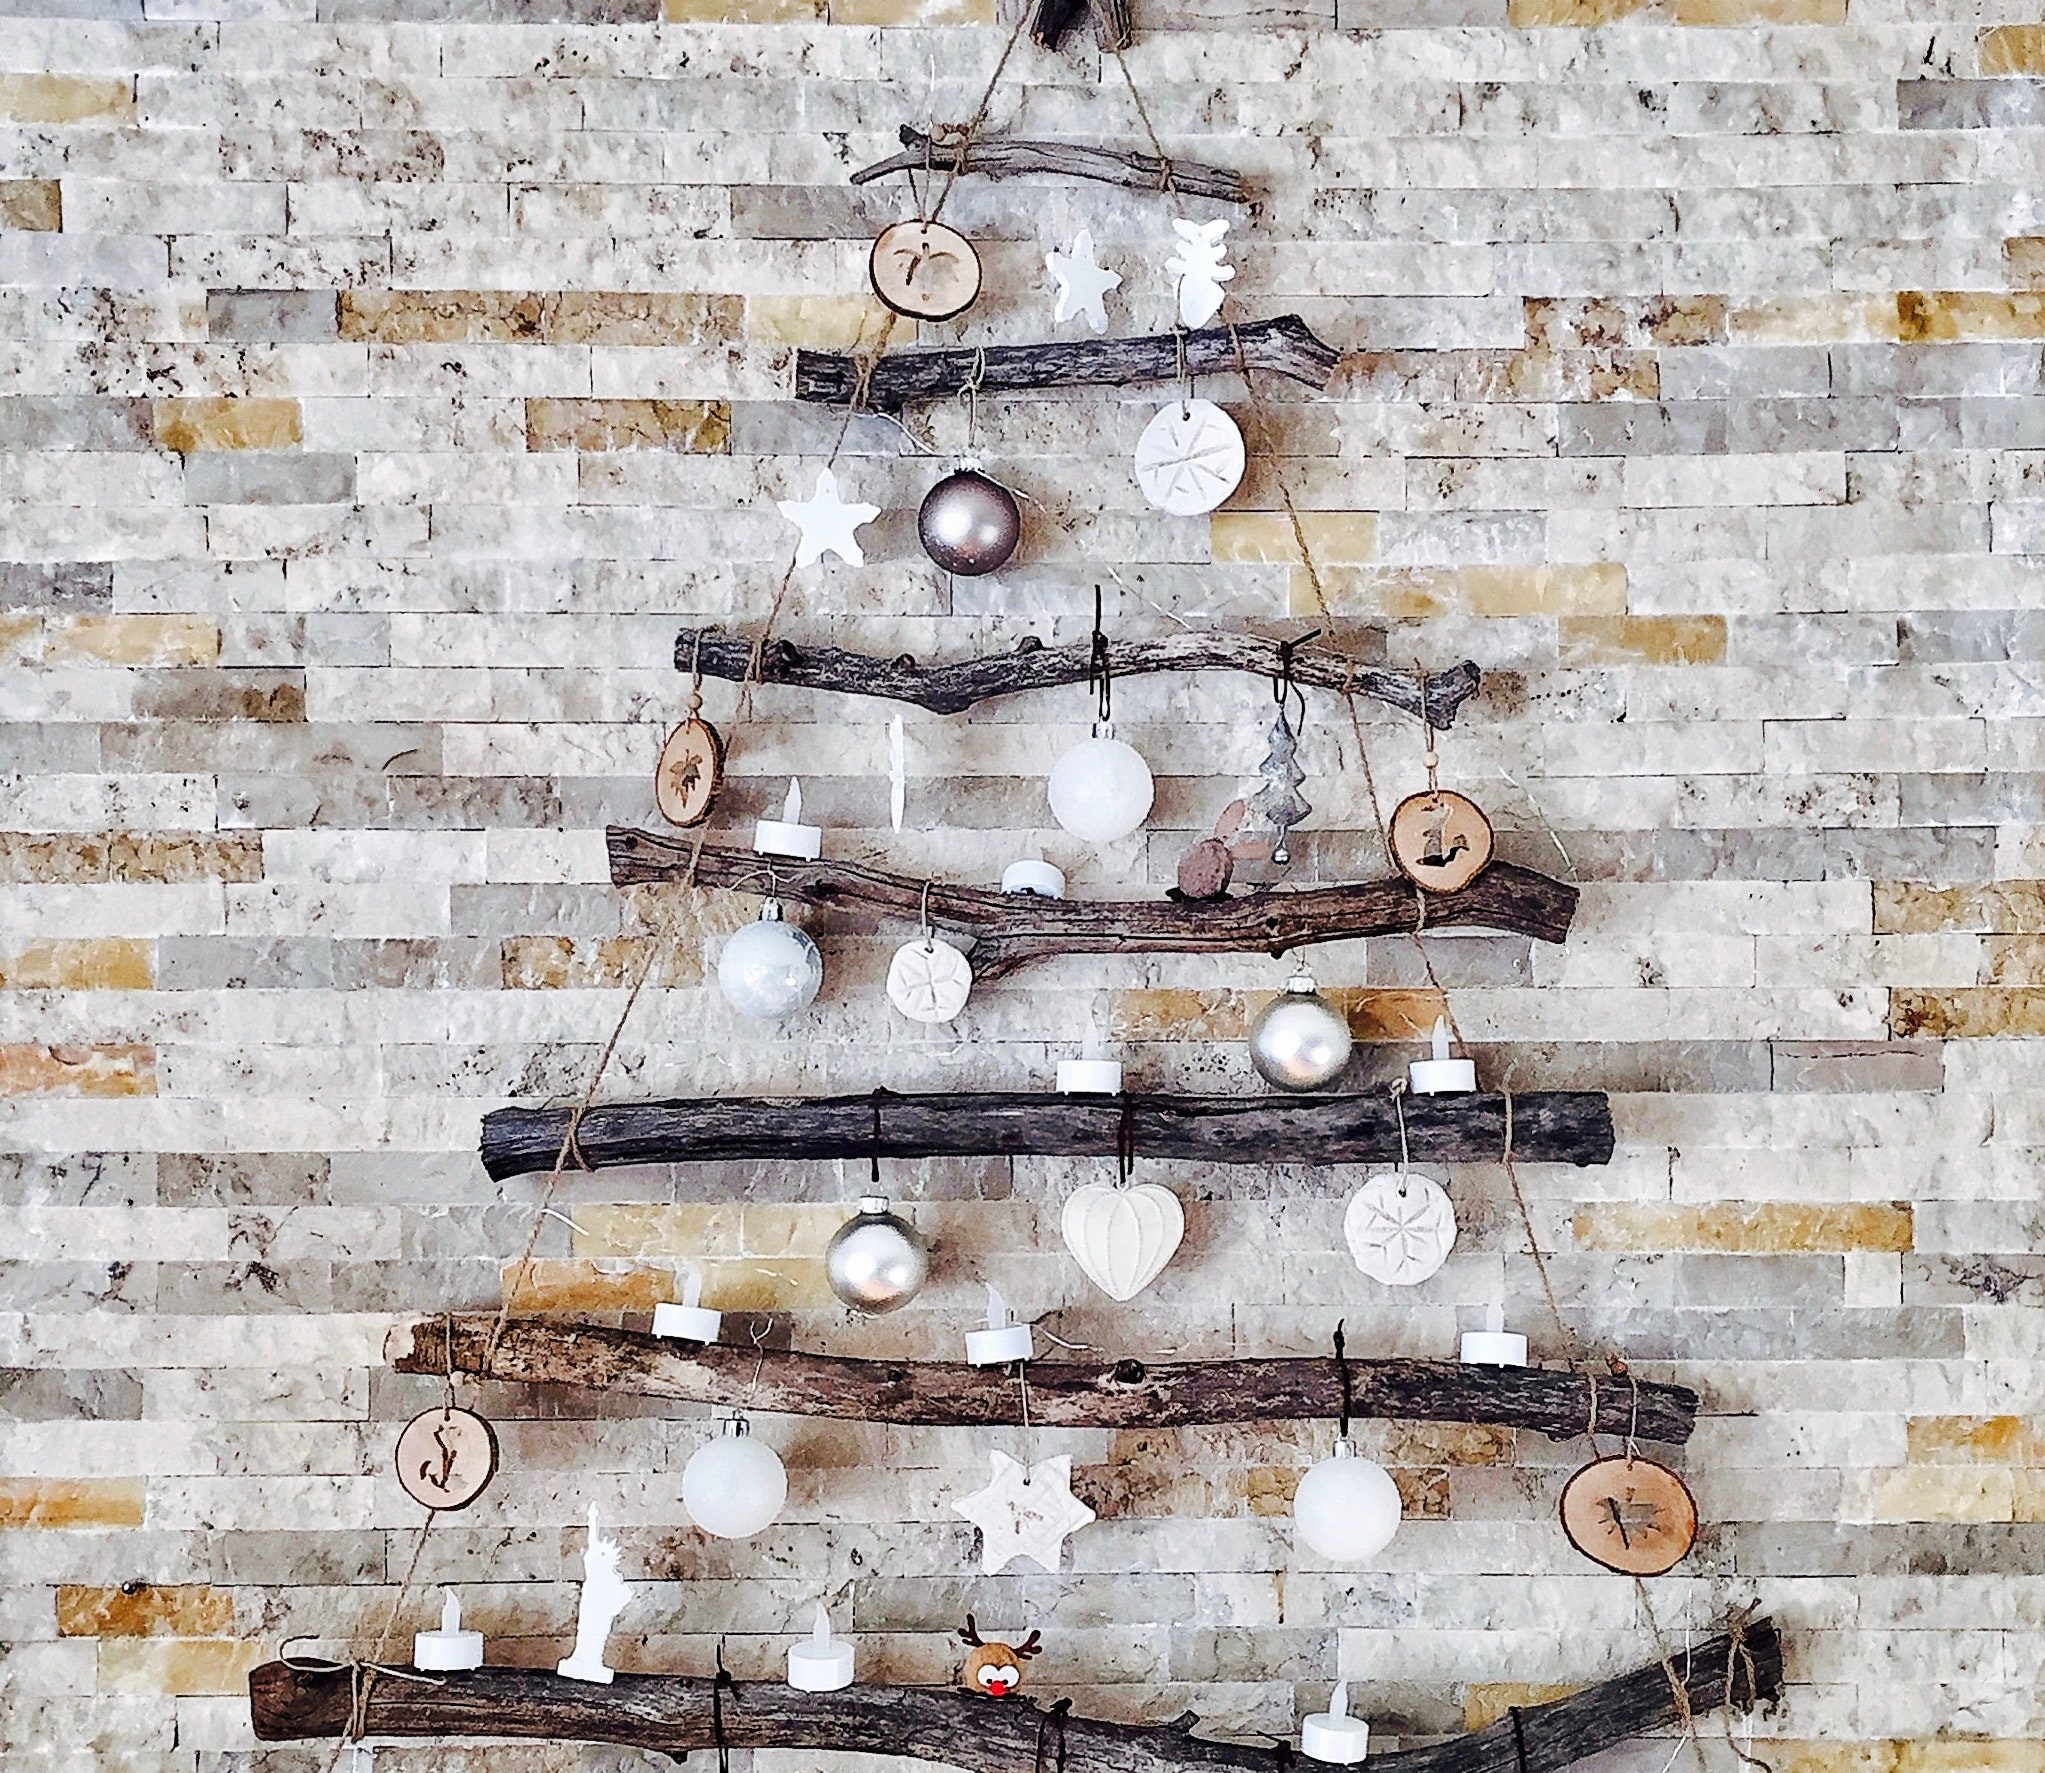 Galhos secos e enfeites natalinos em branco e prata podem trazer um charme a mais para a sua árvore de Natal. 